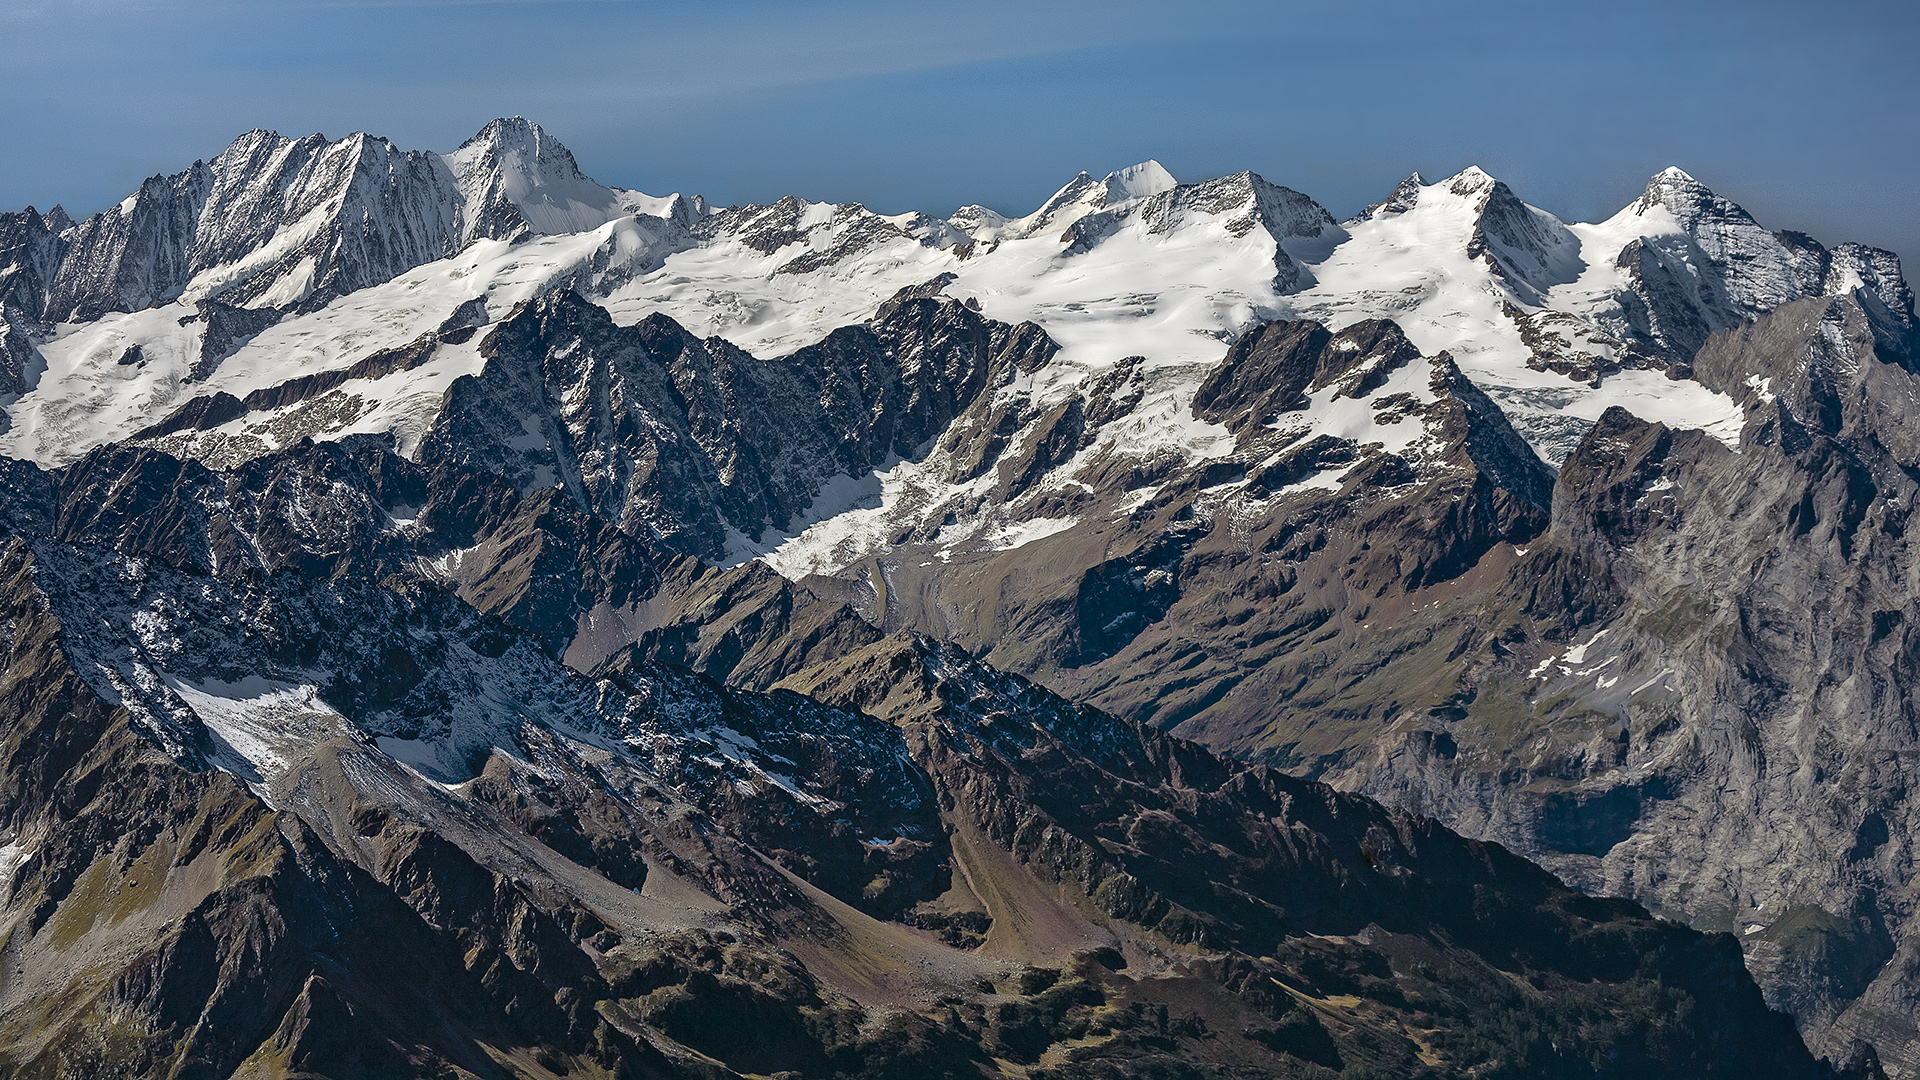 Ausblick vom Titlis; linke Bildhälfte Lauteraarhorn und Schreckhorn, rechte Bildhälfte die stark vergletscherte Wetterhorngruppe.